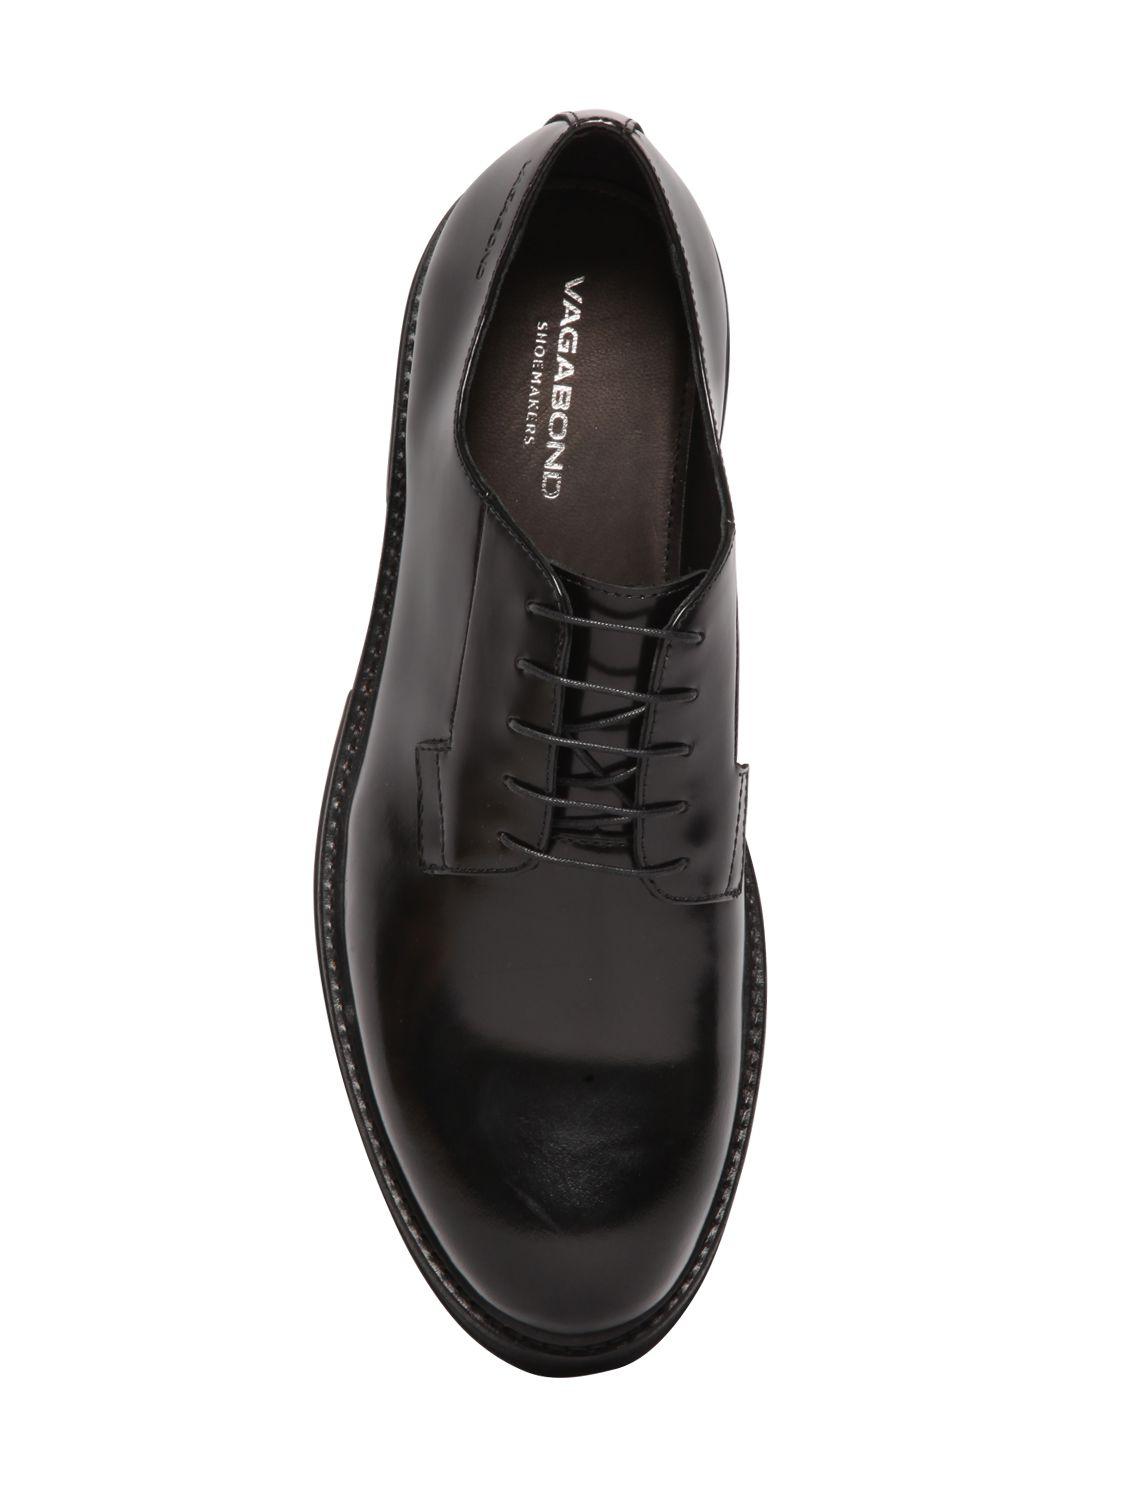 Vagabond Giorgi Brushed Leather Derby Shoes Black for Men - Lyst